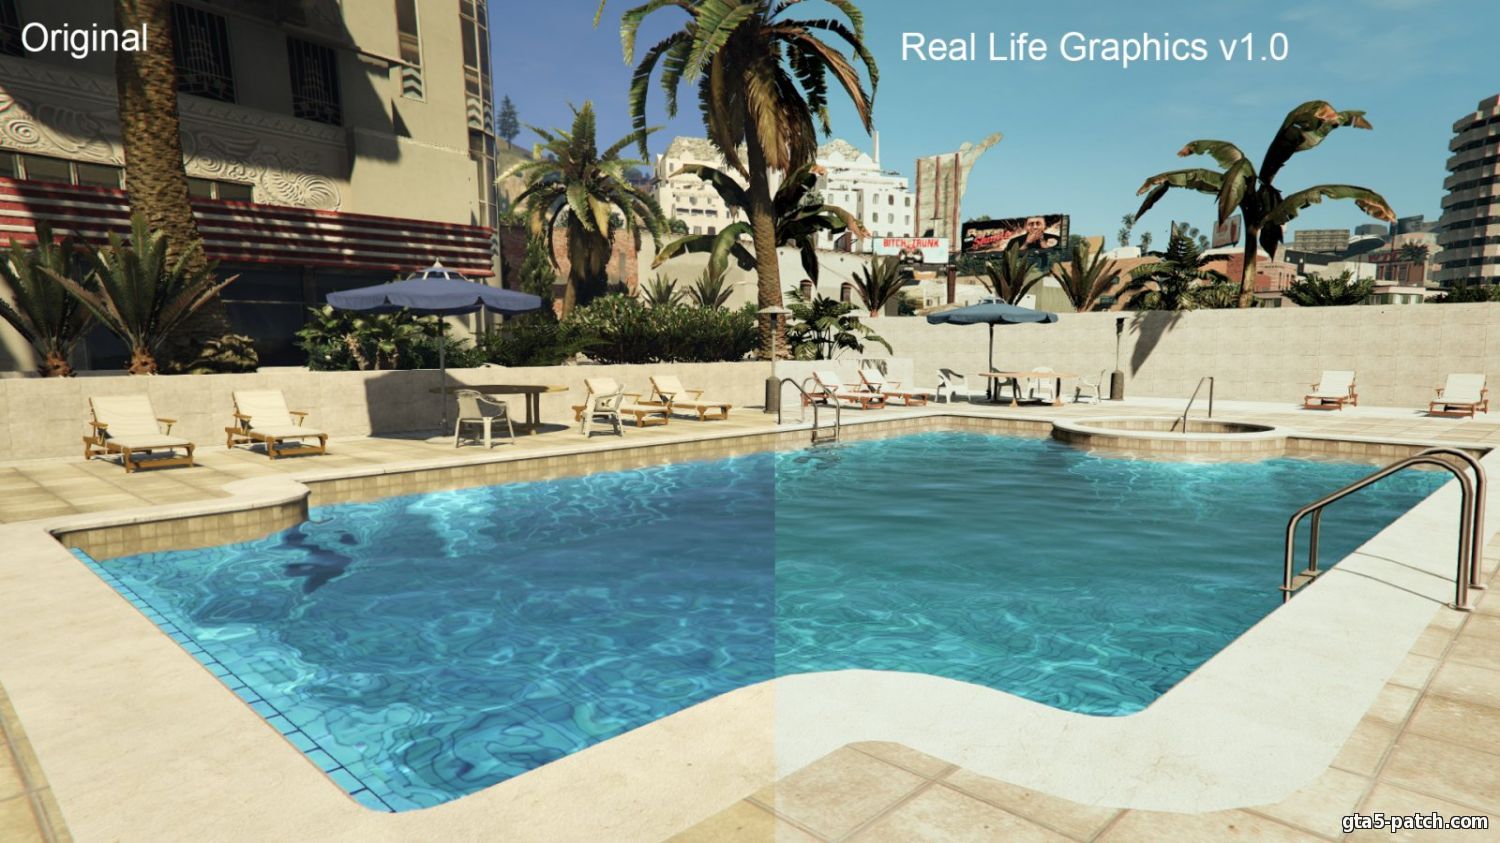 Графика в GTA 5 на PC - Обзор лучших модов